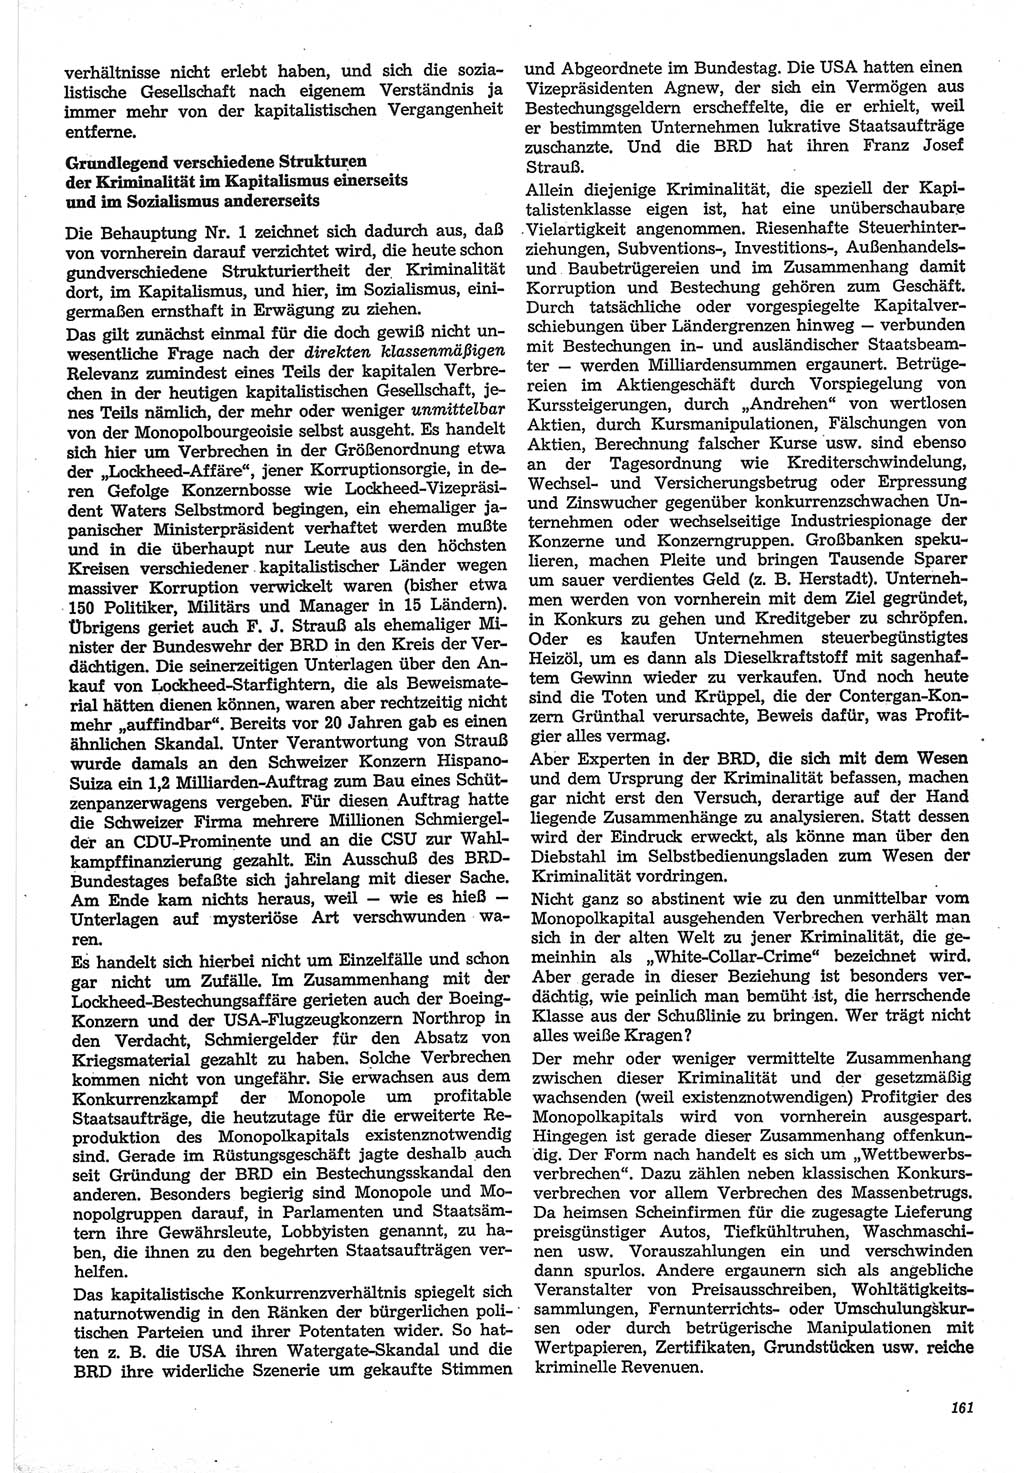 Neue Justiz (NJ), Zeitschrift für Recht und Rechtswissenschaft-Zeitschrift, sozialistisches Recht und Gesetzlichkeit, 31. Jahrgang 1977, Seite 161 (NJ DDR 1977, S. 161)